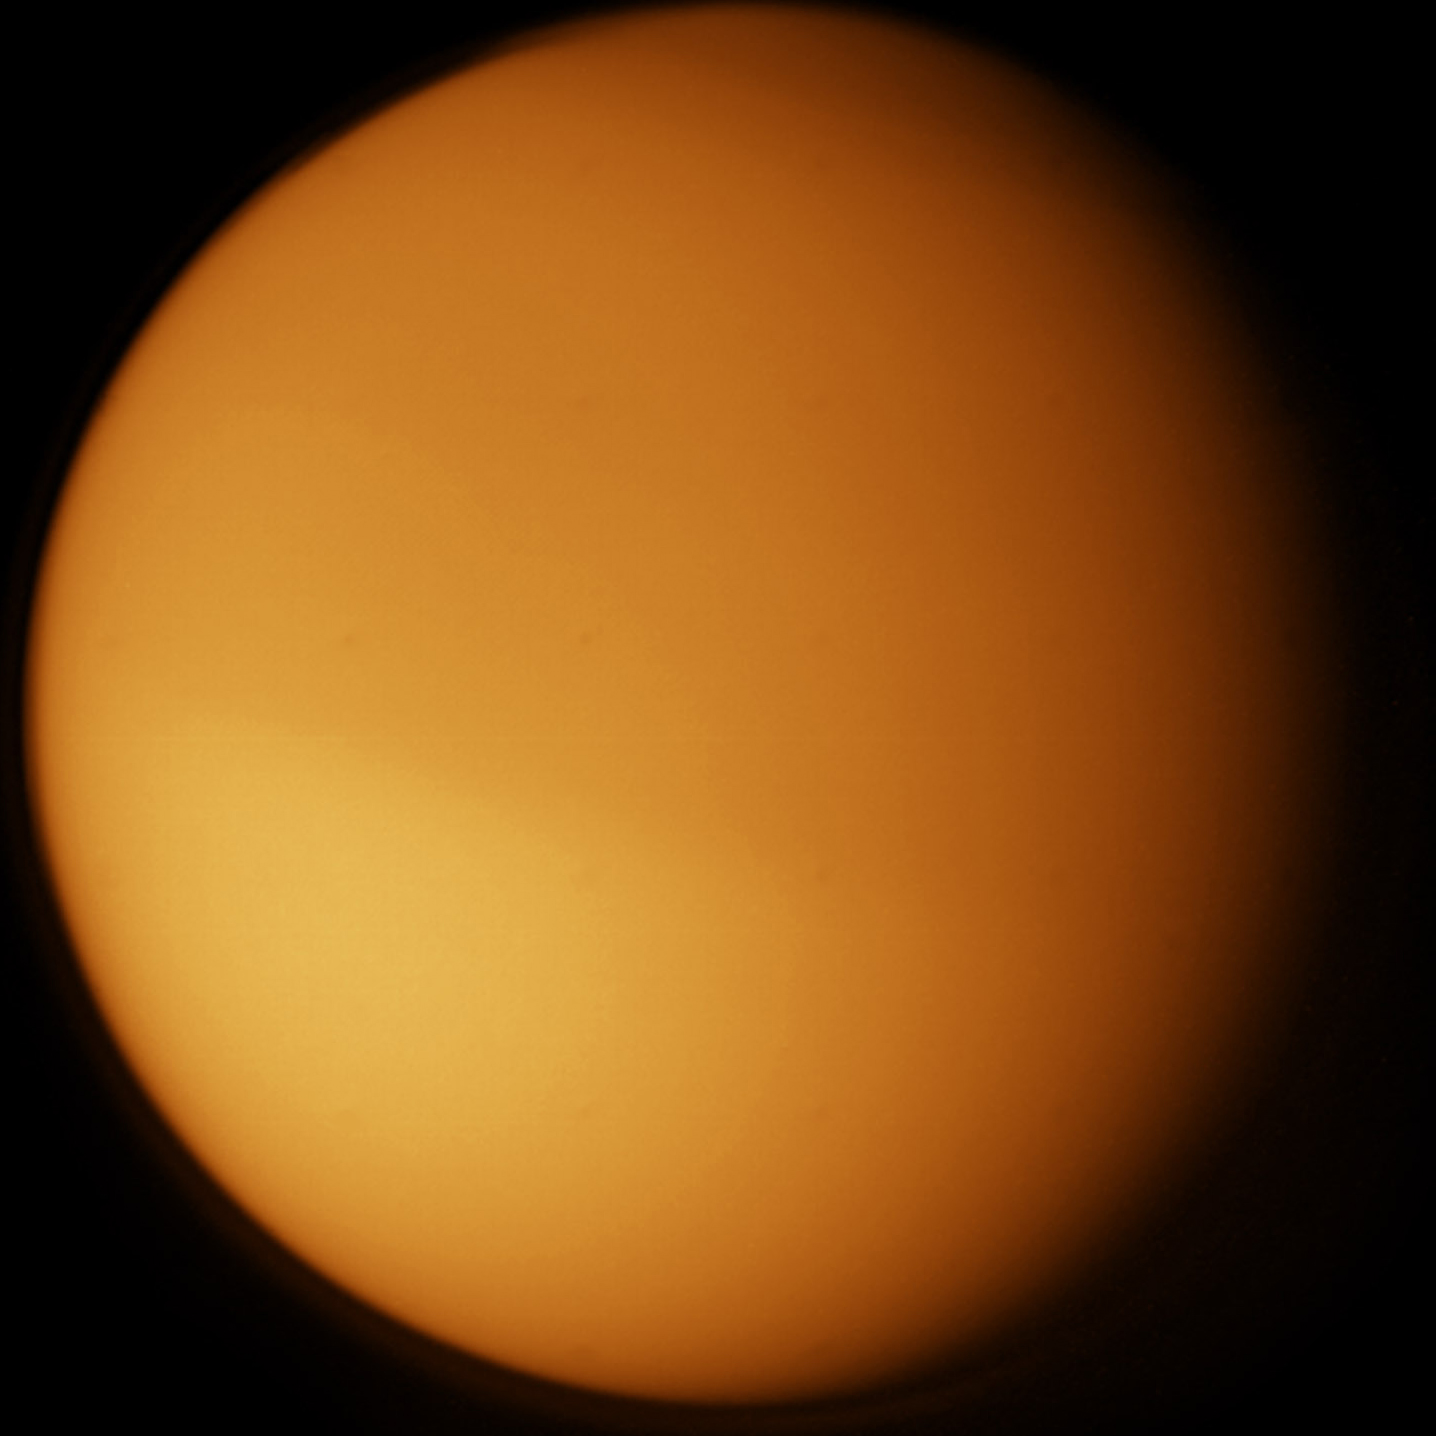 ภาพดวงจันทร์ไททันที่ถ่ายโดยยานวอยเอเจอร์ ยานไม่สามารถมองเห็นสภาพพื้นผิวได้อย่างเลือนรางเนื่องจากมีบรรยากาศสีส้มหนาทึบปกคลุม (ภาพจาก NASA/JPL/Calvin Hamilton)